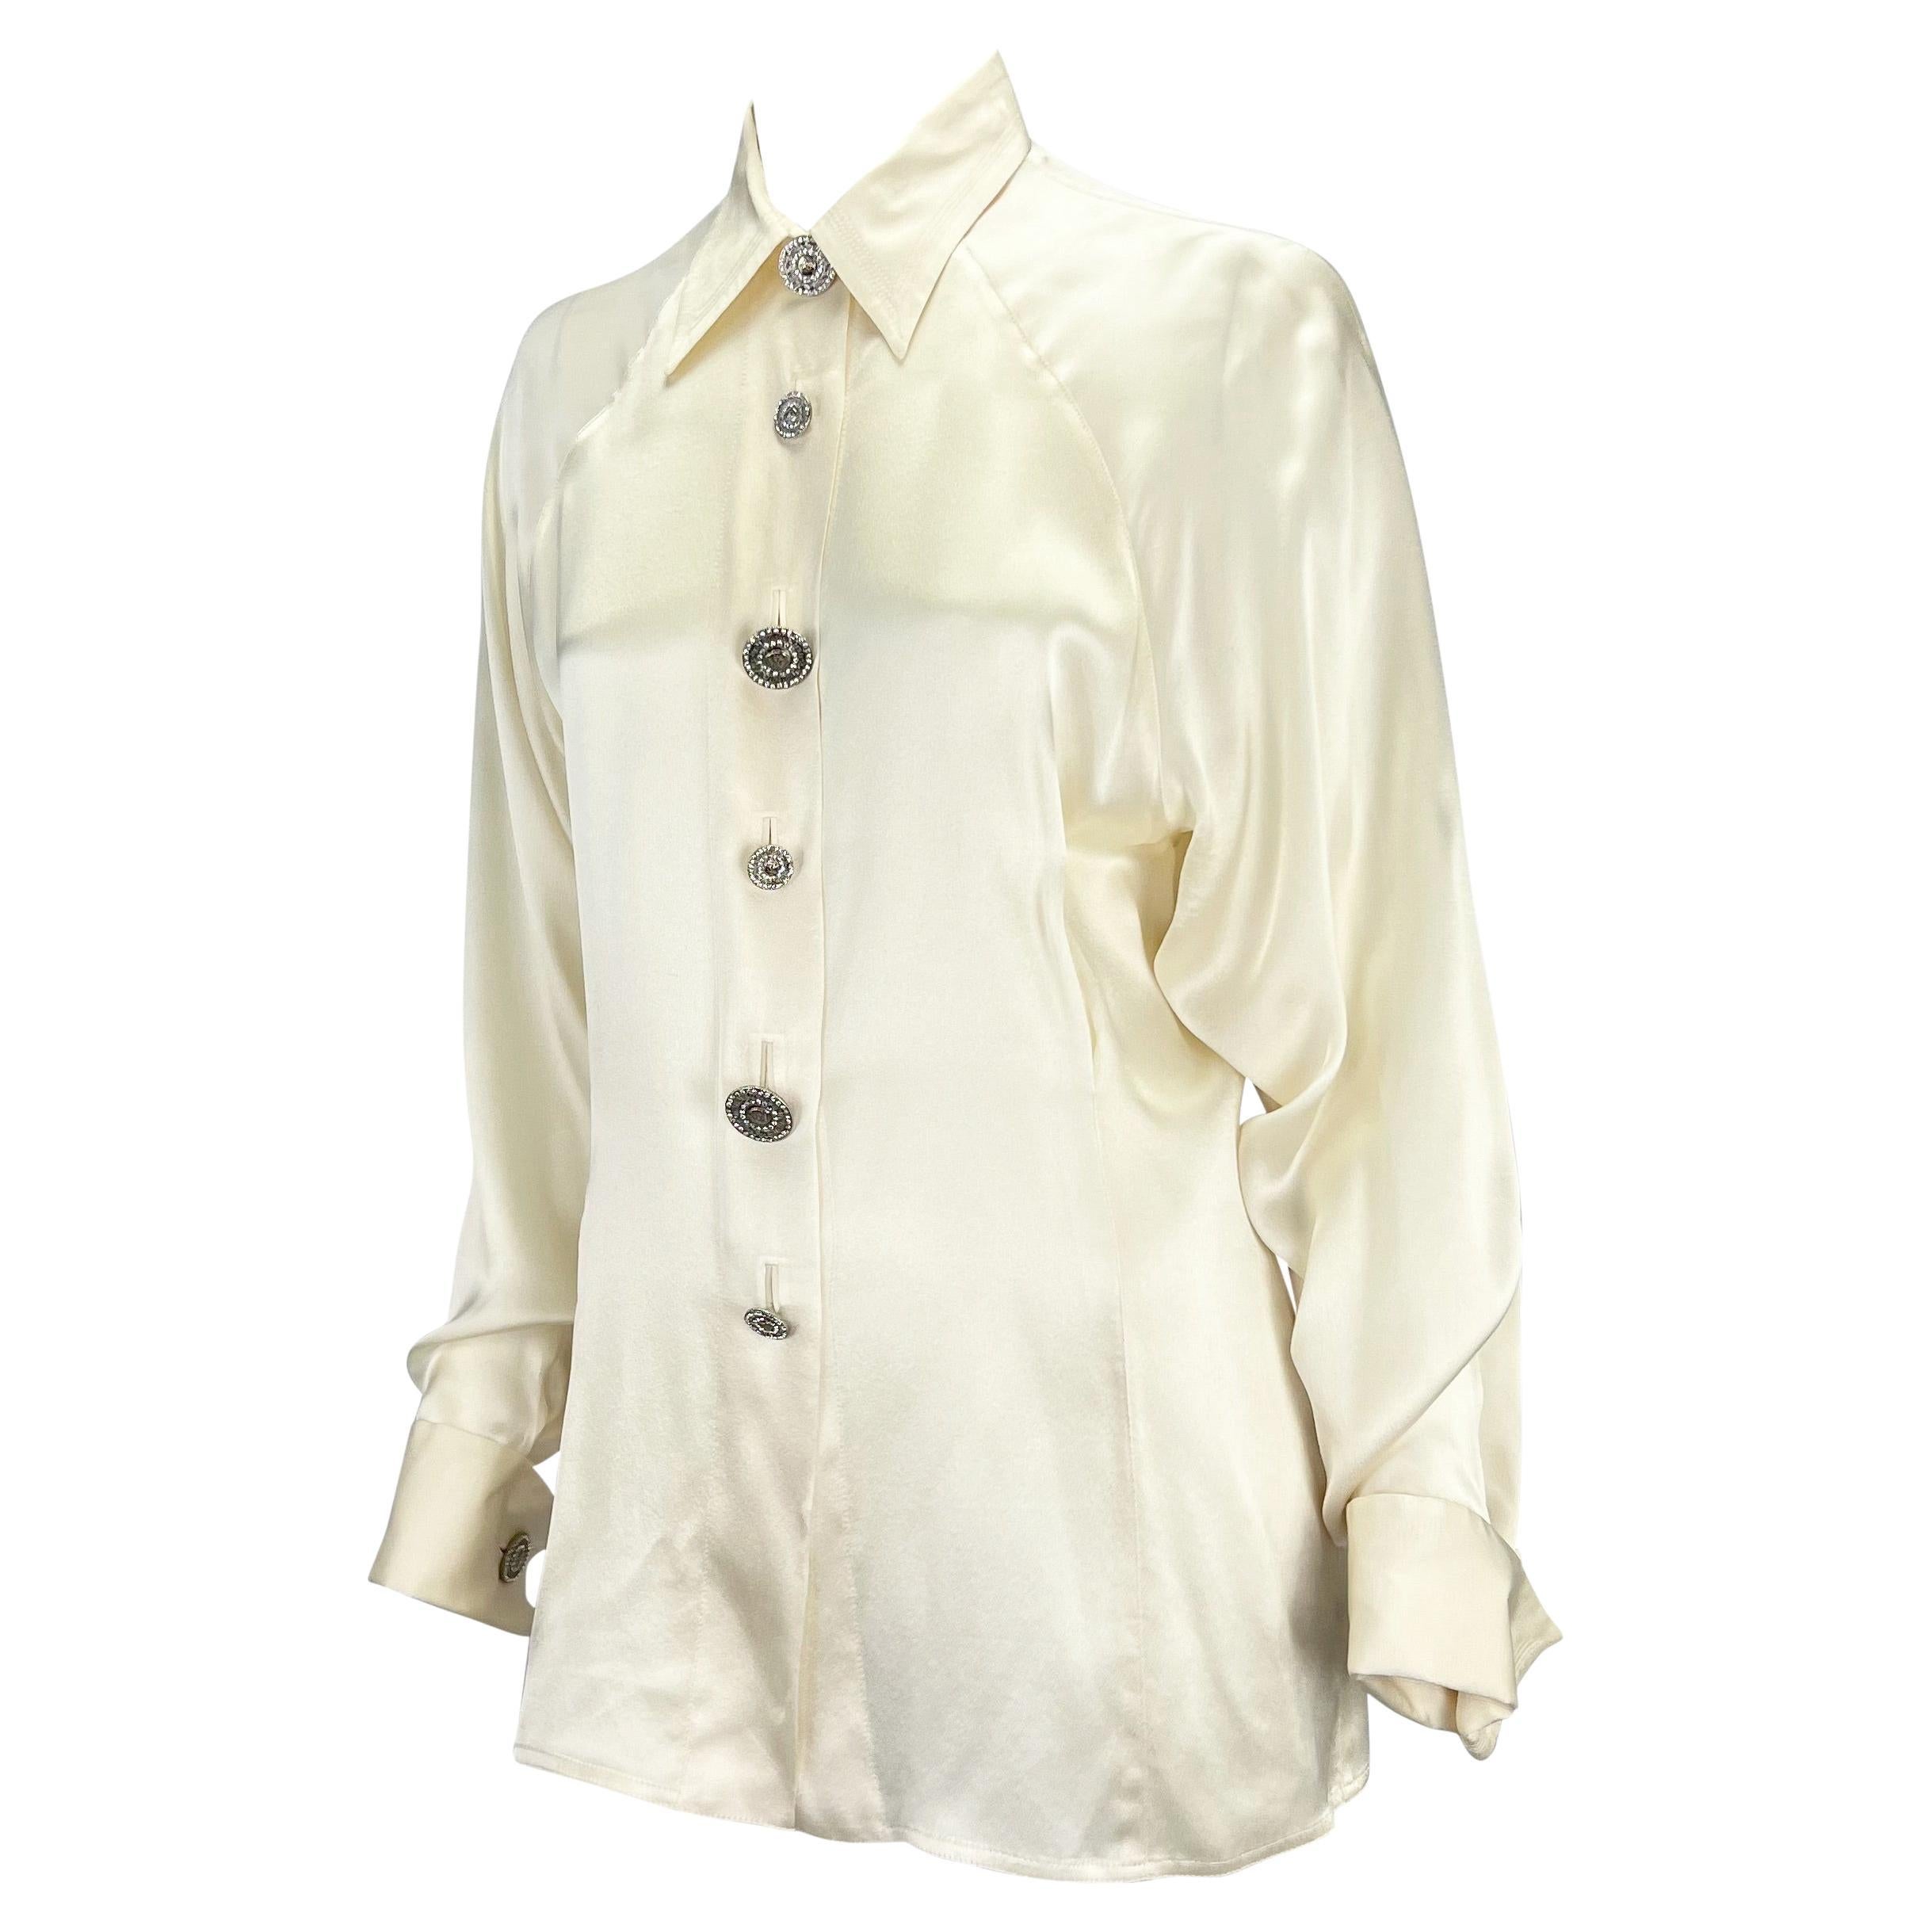 Ich präsentiere eine cremefarbene Seidensatin-Bluse von Gianni Versace Couture, entworfen von Gianni Versace. Dieses Hemd aus den 1990er Jahren ist ganz aus luxuriöser Seide gefertigt, die bei jeder Bewegung glänzt. Dieses Oberteil ist mit